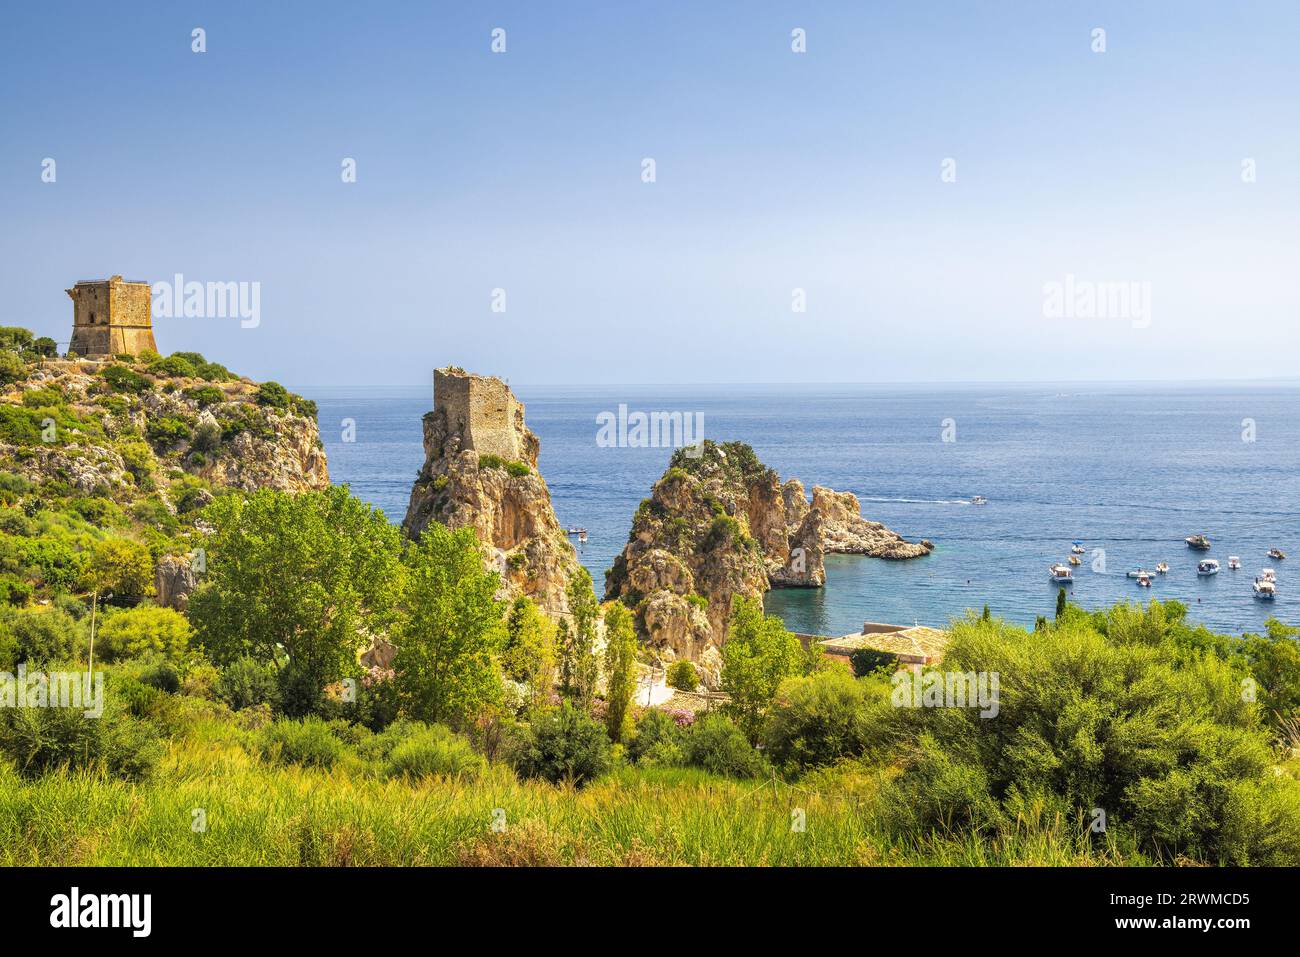 Faraglioni di Scopello - i faraglioni di Scopello, cime rocciose in mare vicino alla città di Castellammare del Golfo nella Sicilia nord-occidentale, Italia, Europa. Foto Stock